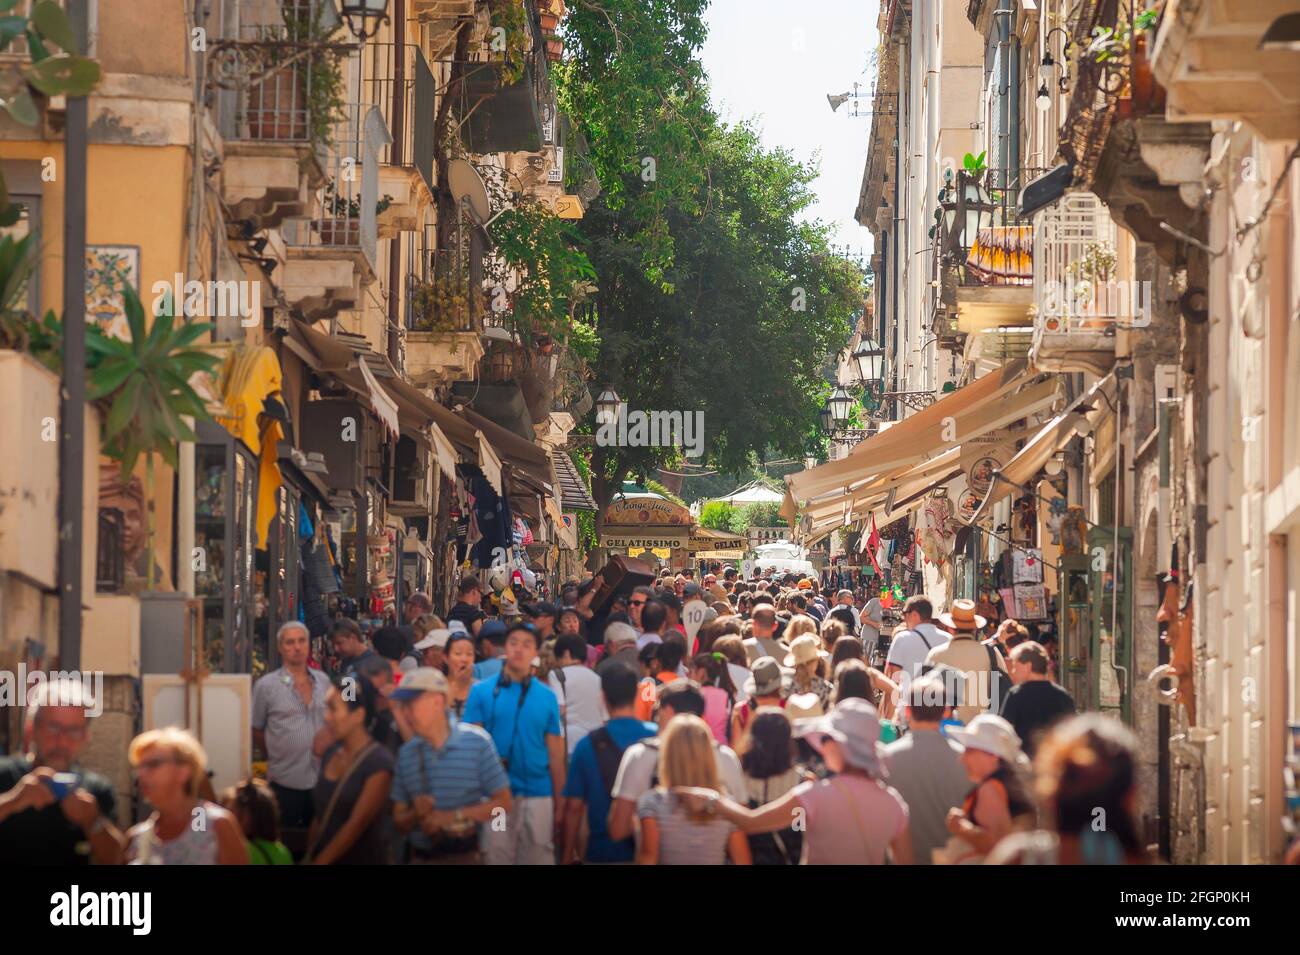 Italie rue touristique, vue en été des touristes dans une rue animée dans le centre historique de Taormina, la Sicile, l'Italie, l'Europe. Banque D'Images